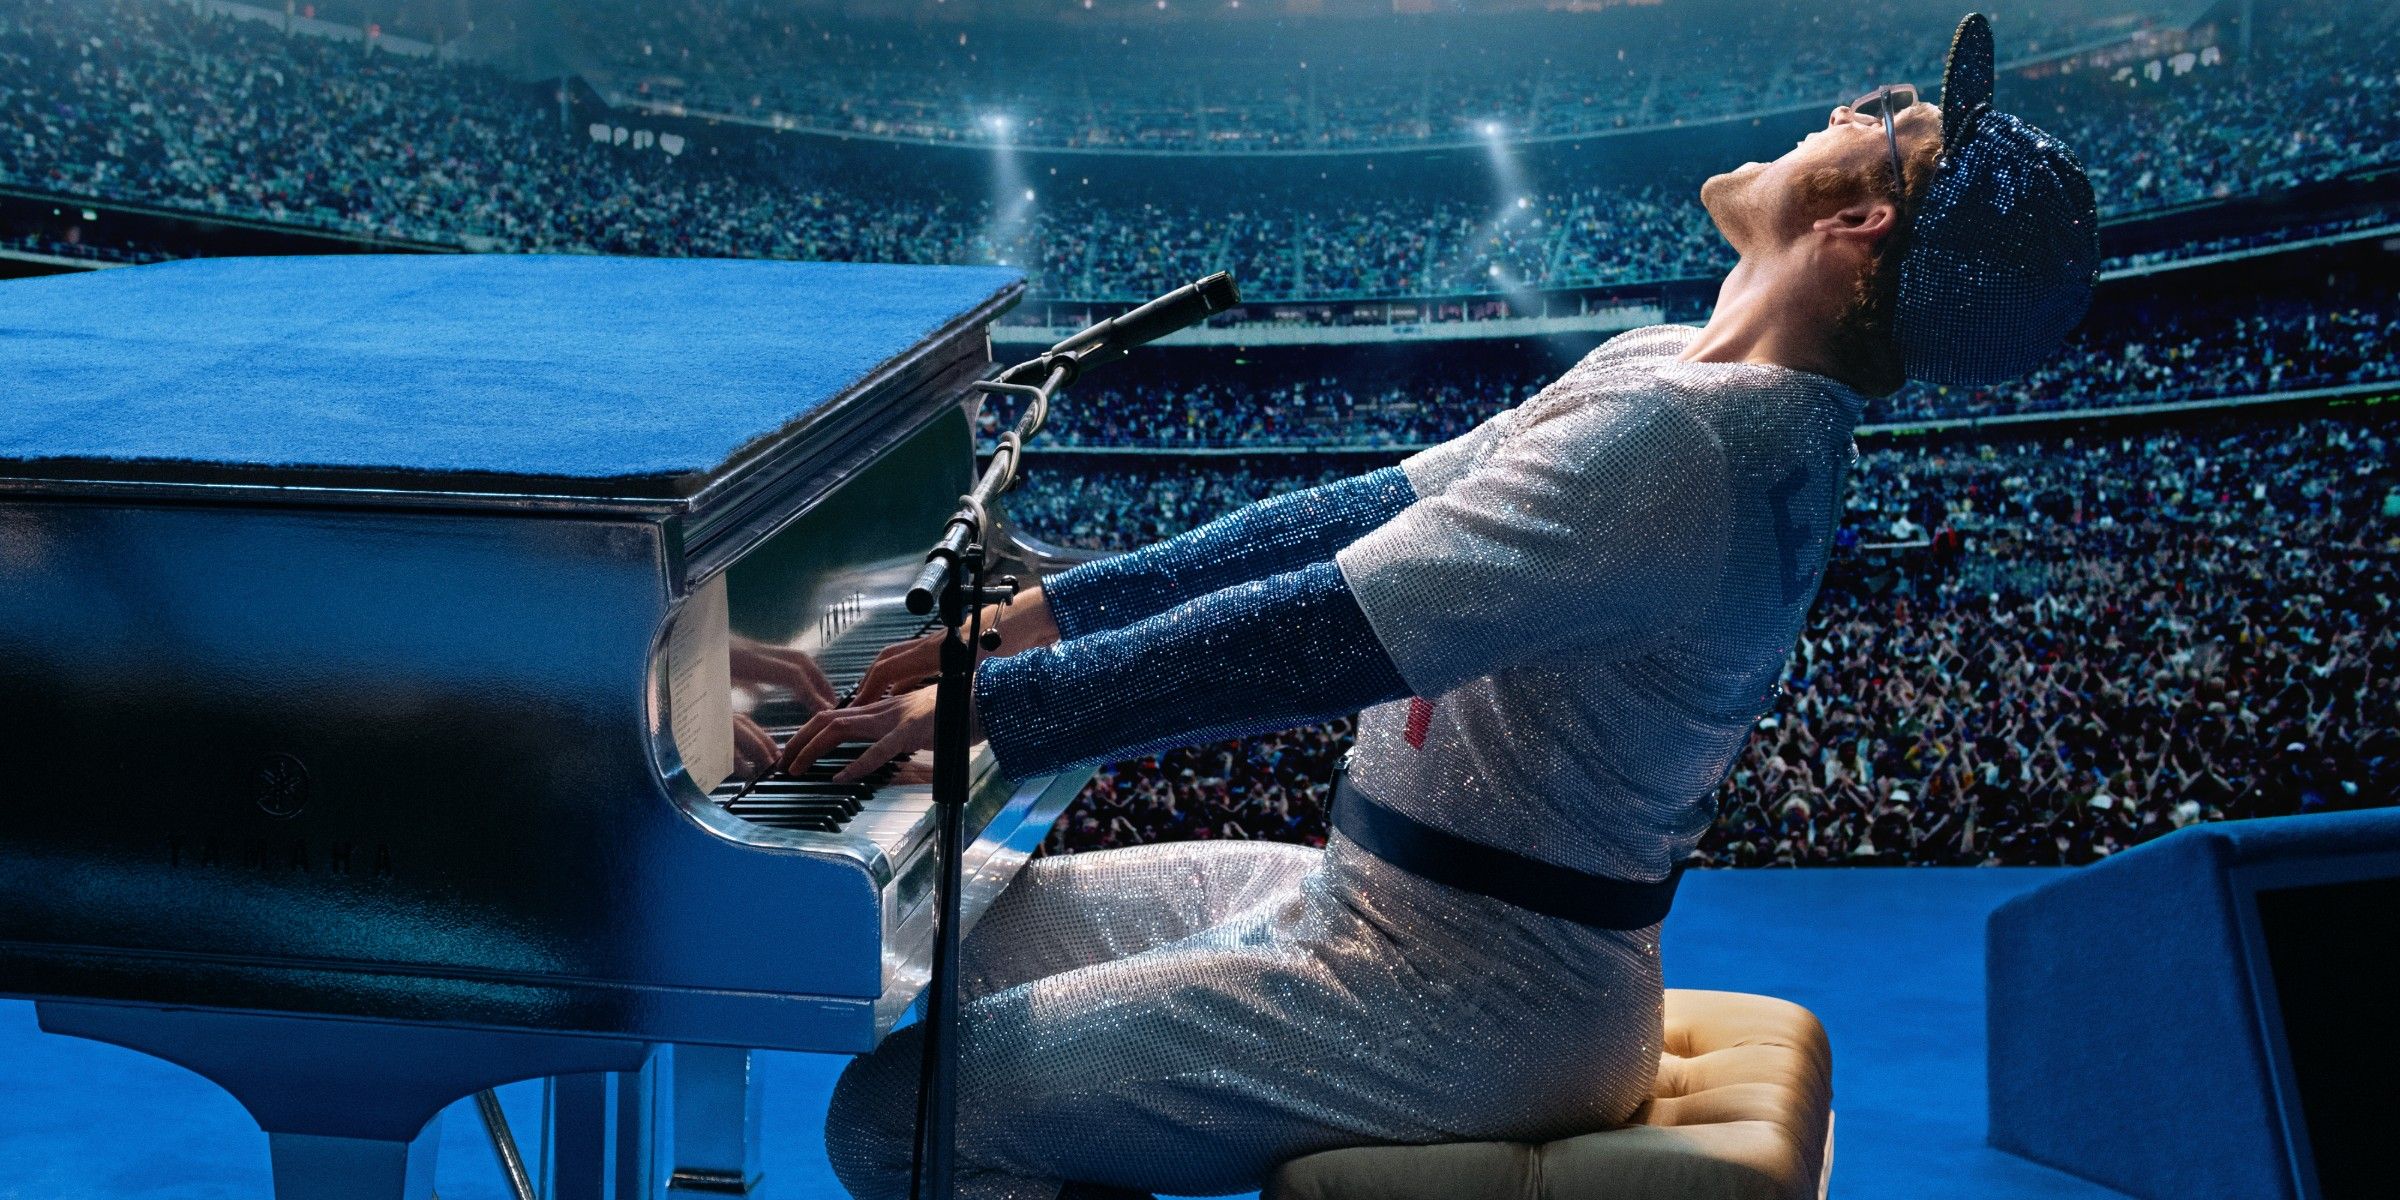 Tráiler de Rocketman: la película biográfica de Elton John está basada en una fantasía real